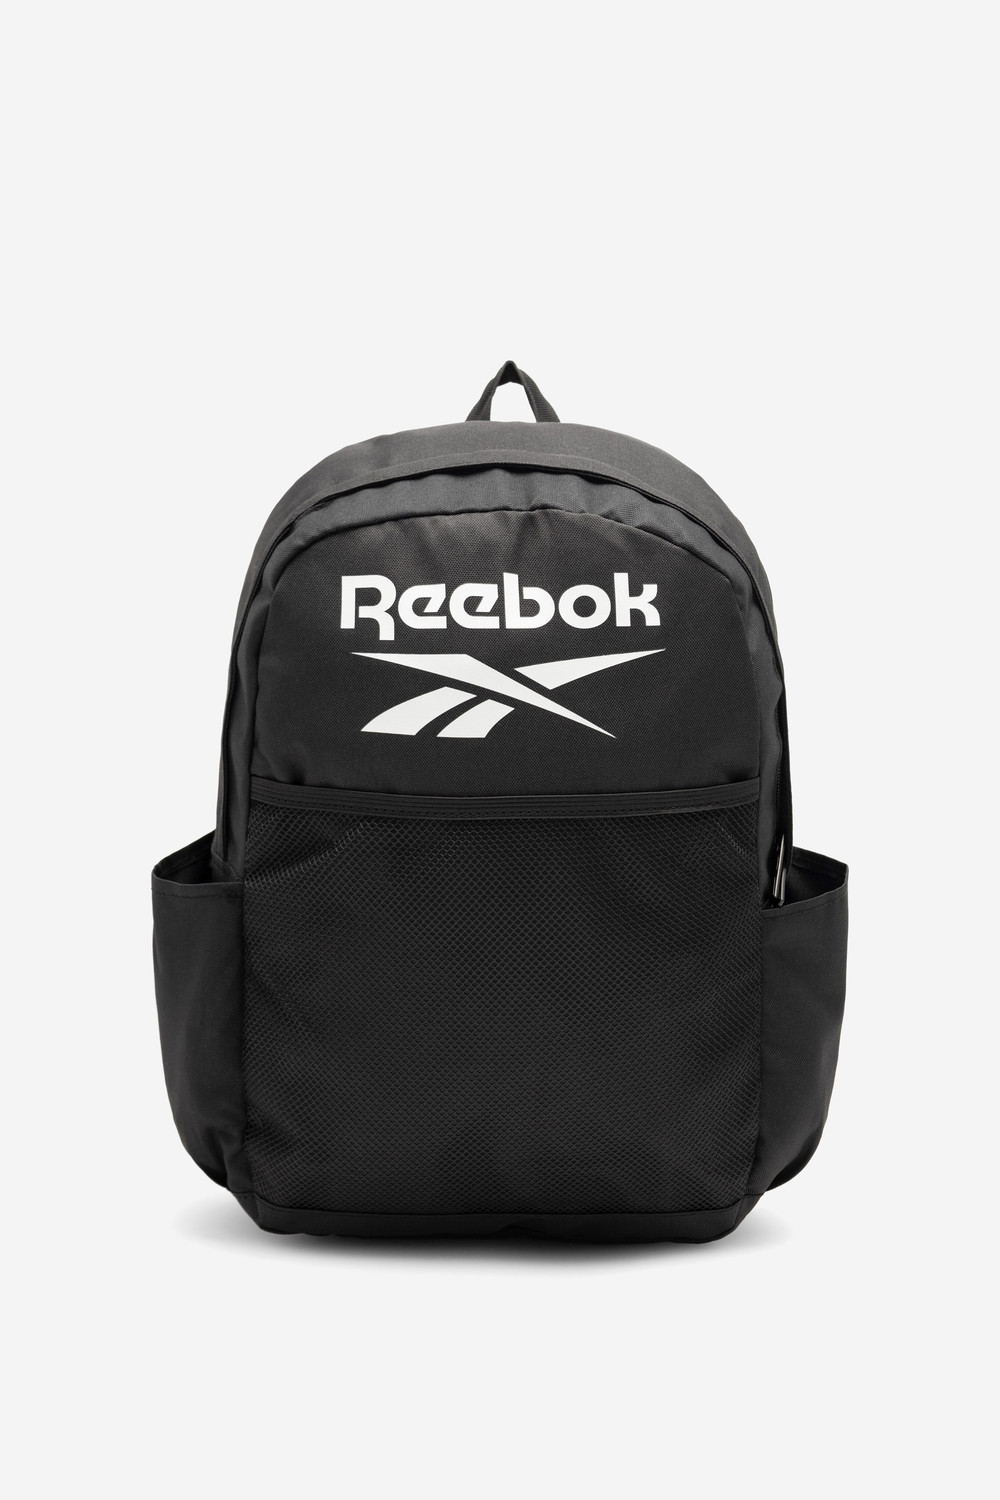 Batohy a tašky Reebok RBK-P-008-CCC